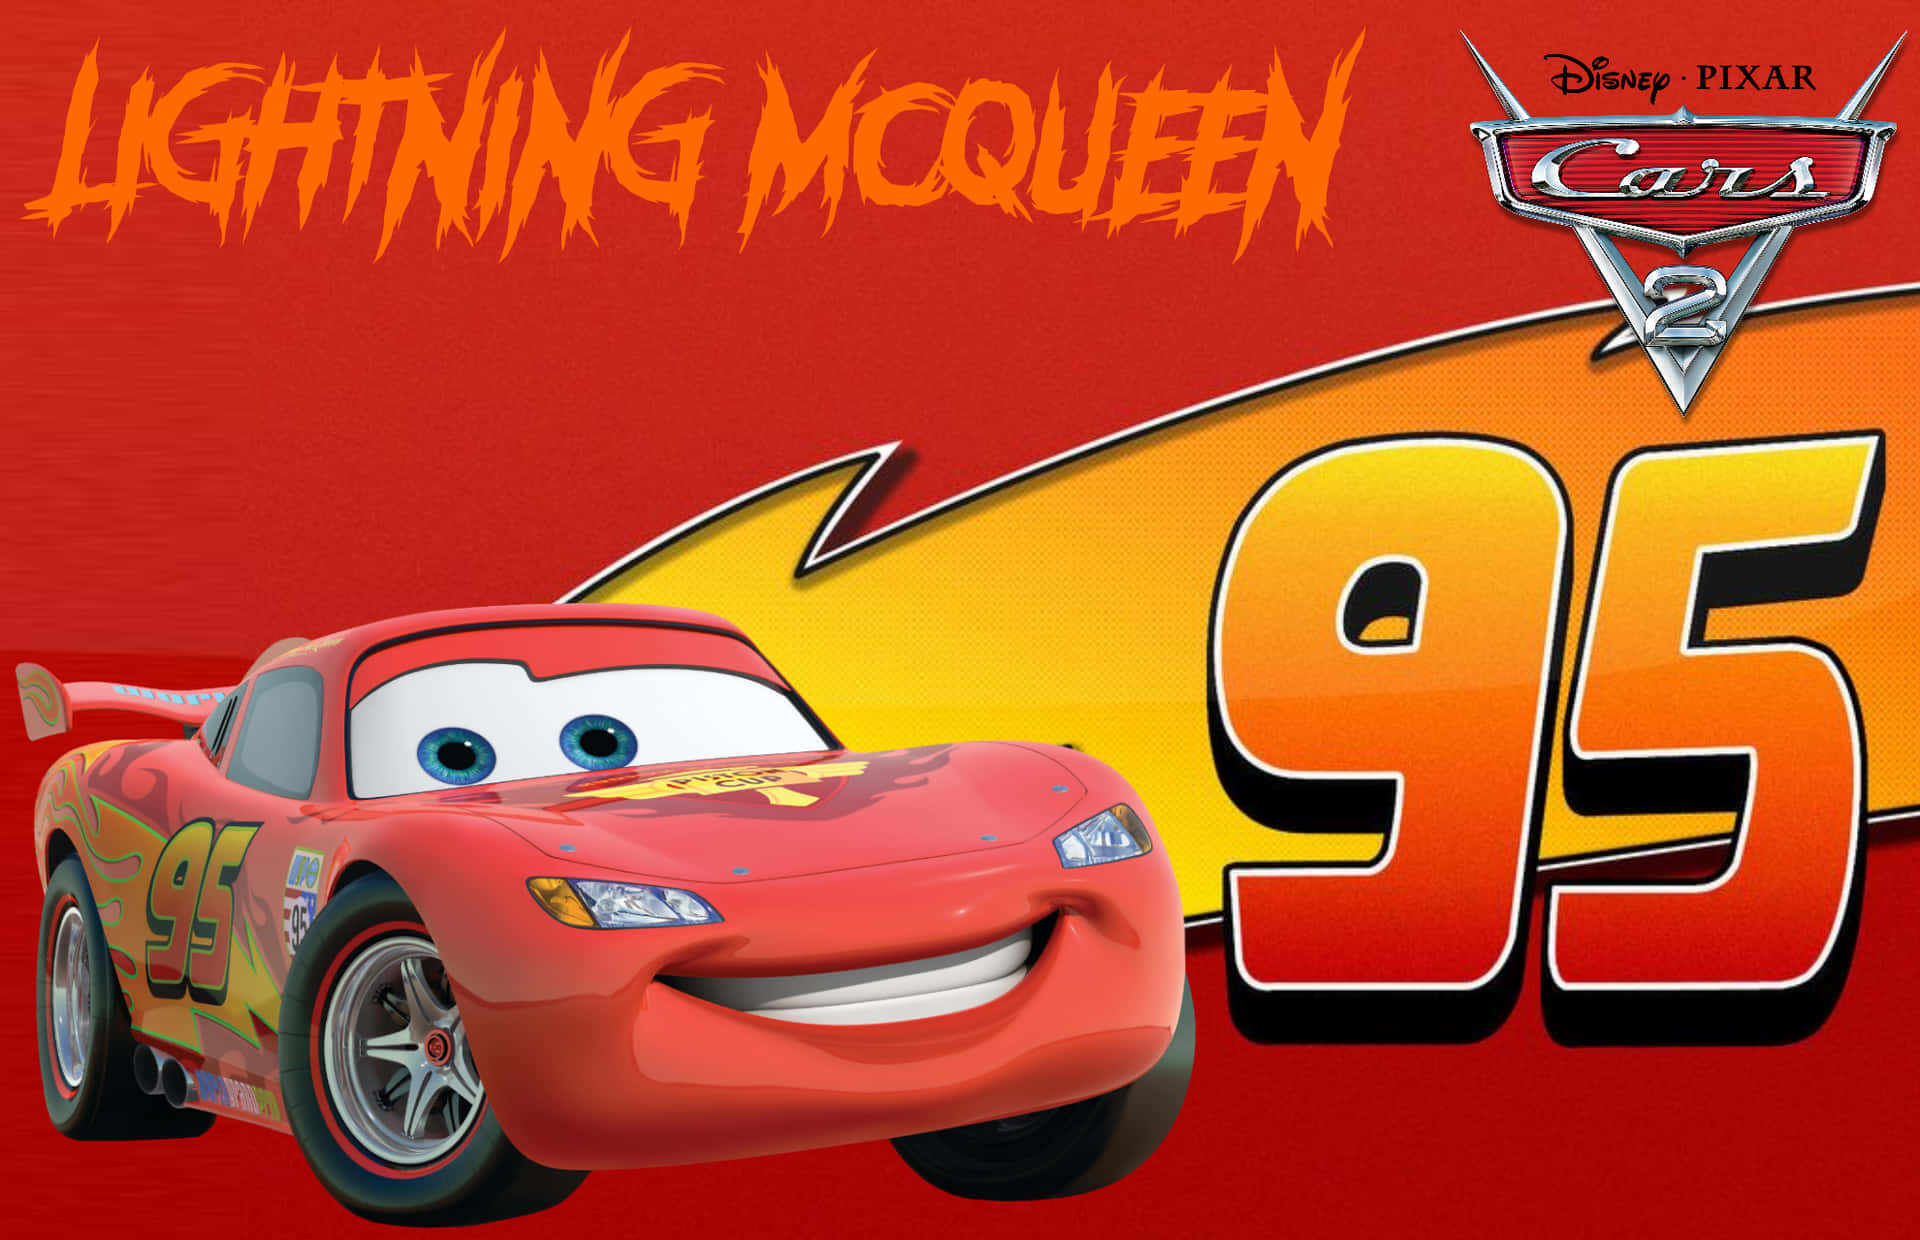 Lightningmcqueen Og Mater Fejrer En Vellykket Race I Cars 2.